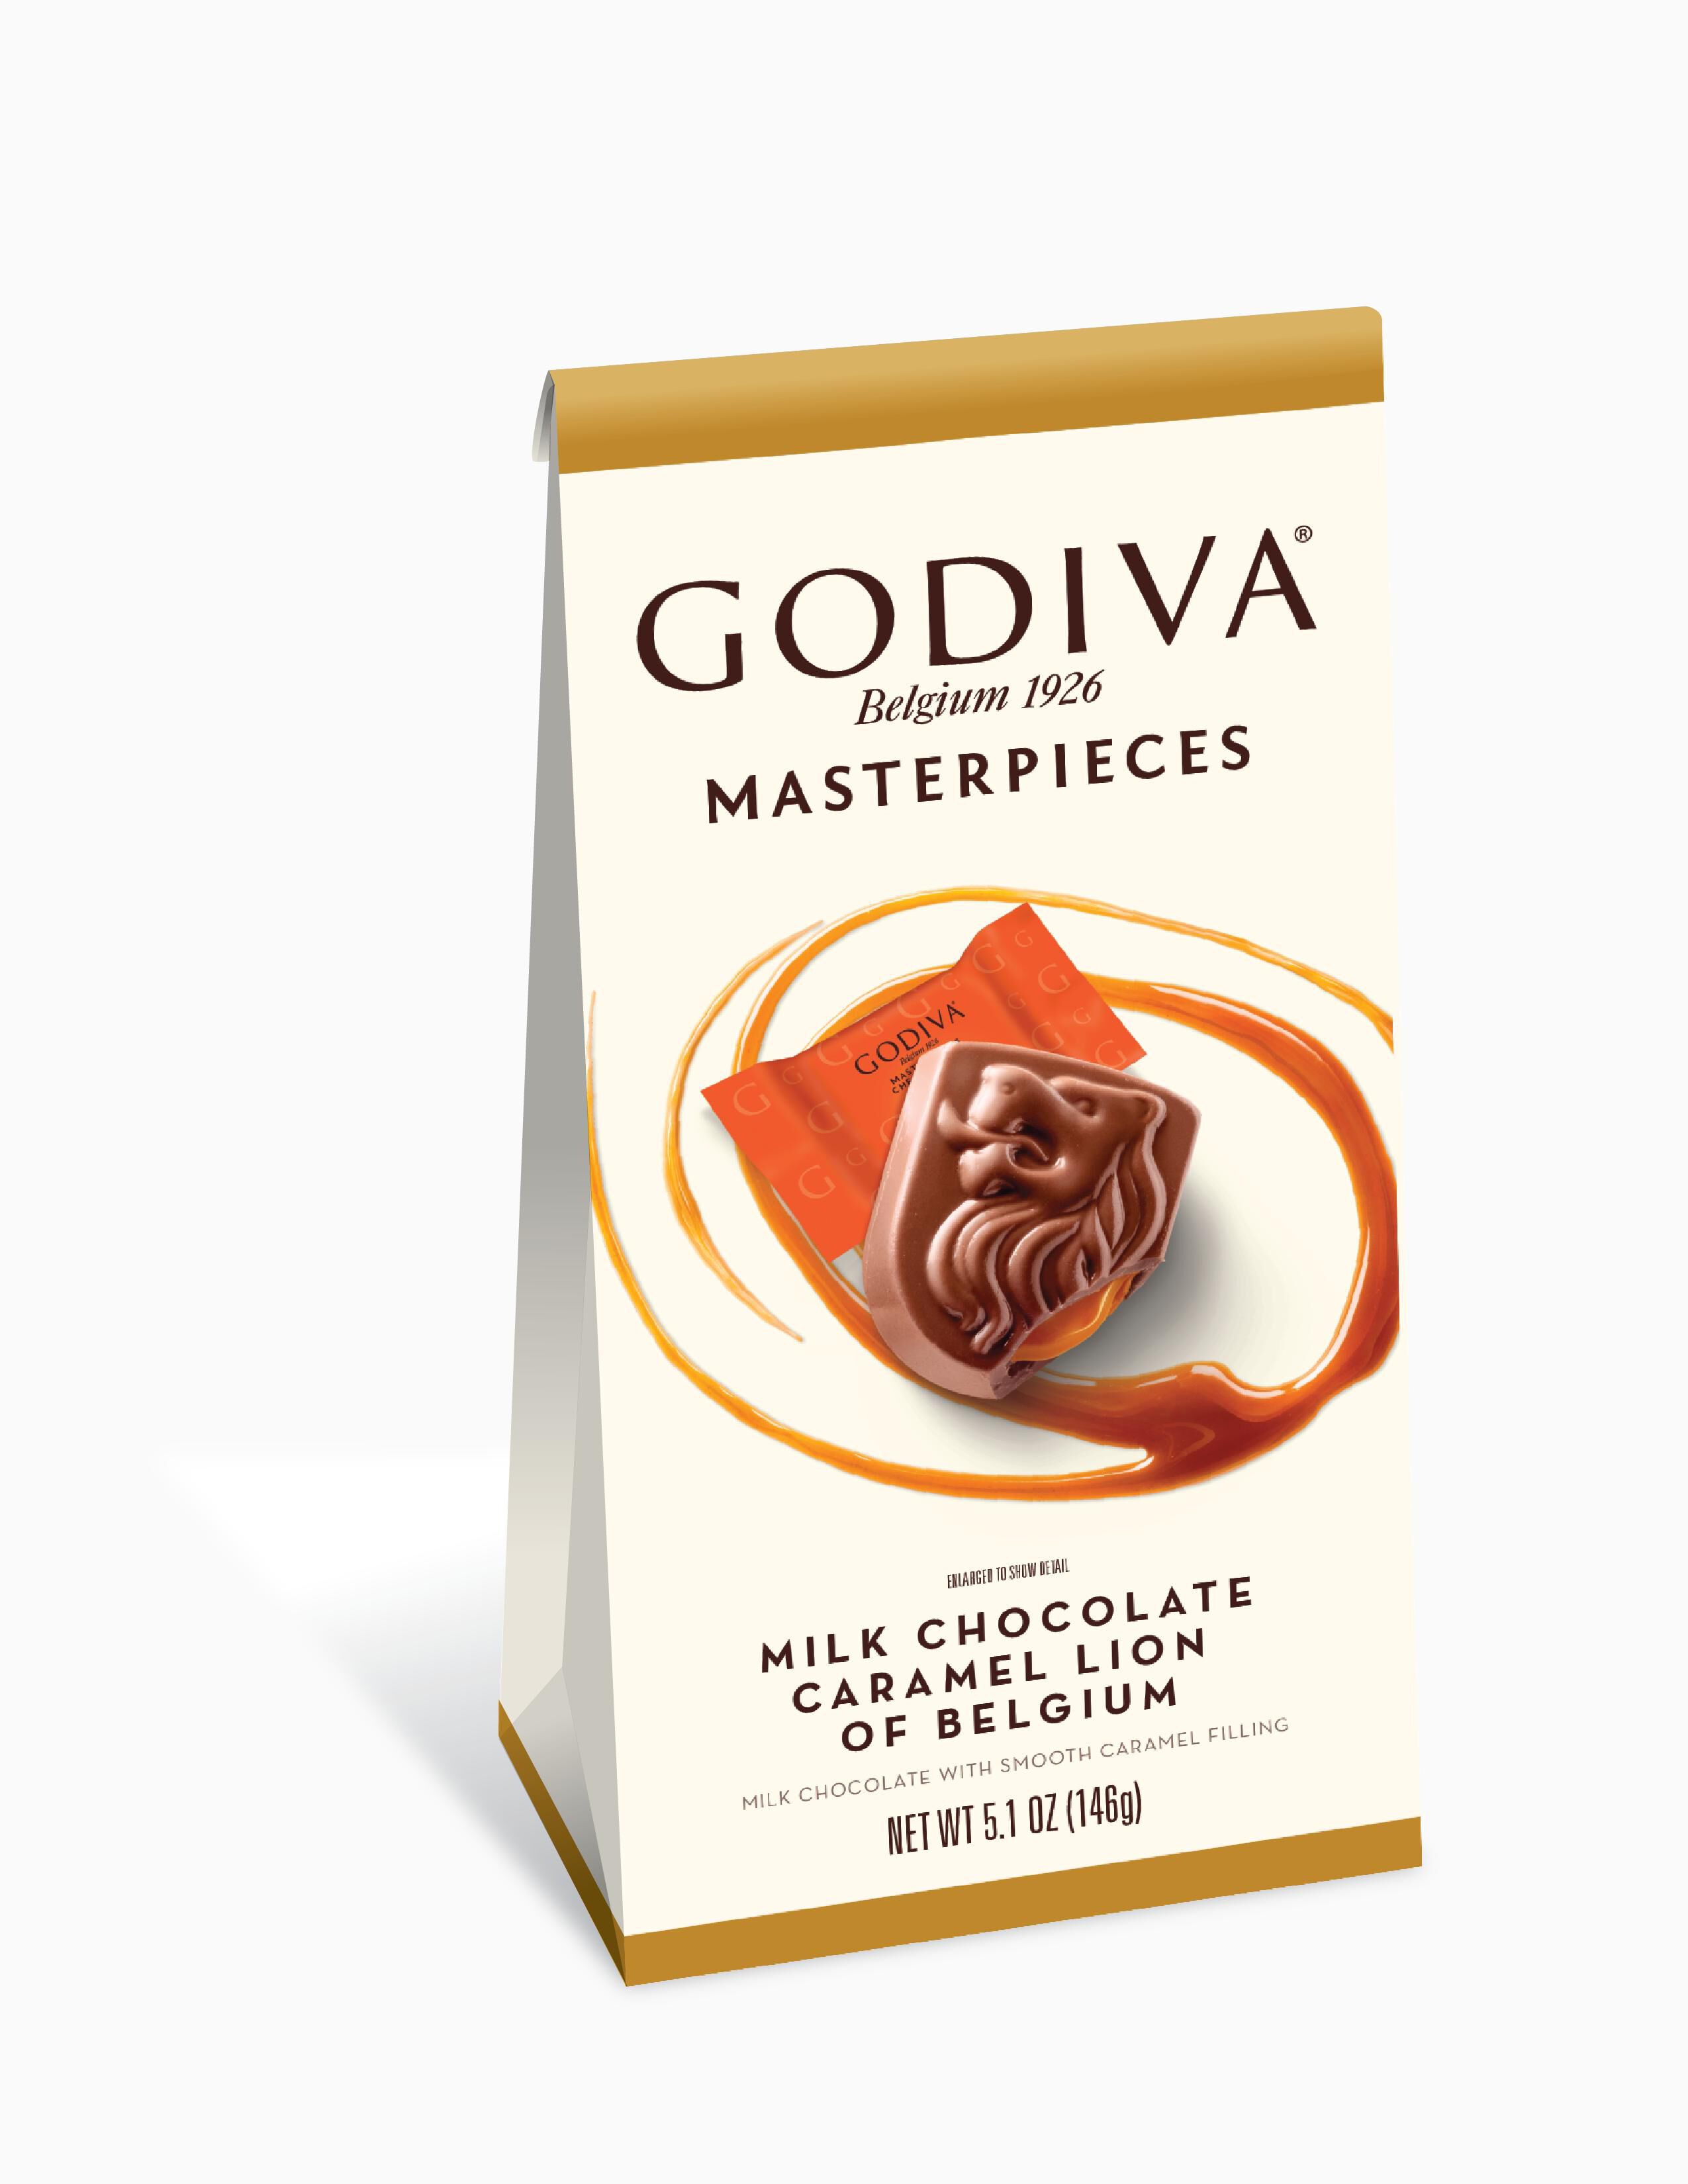 2 Lbs Caramel Lion Belgium Candy Godiva Masterpieces Chocolate Bar 